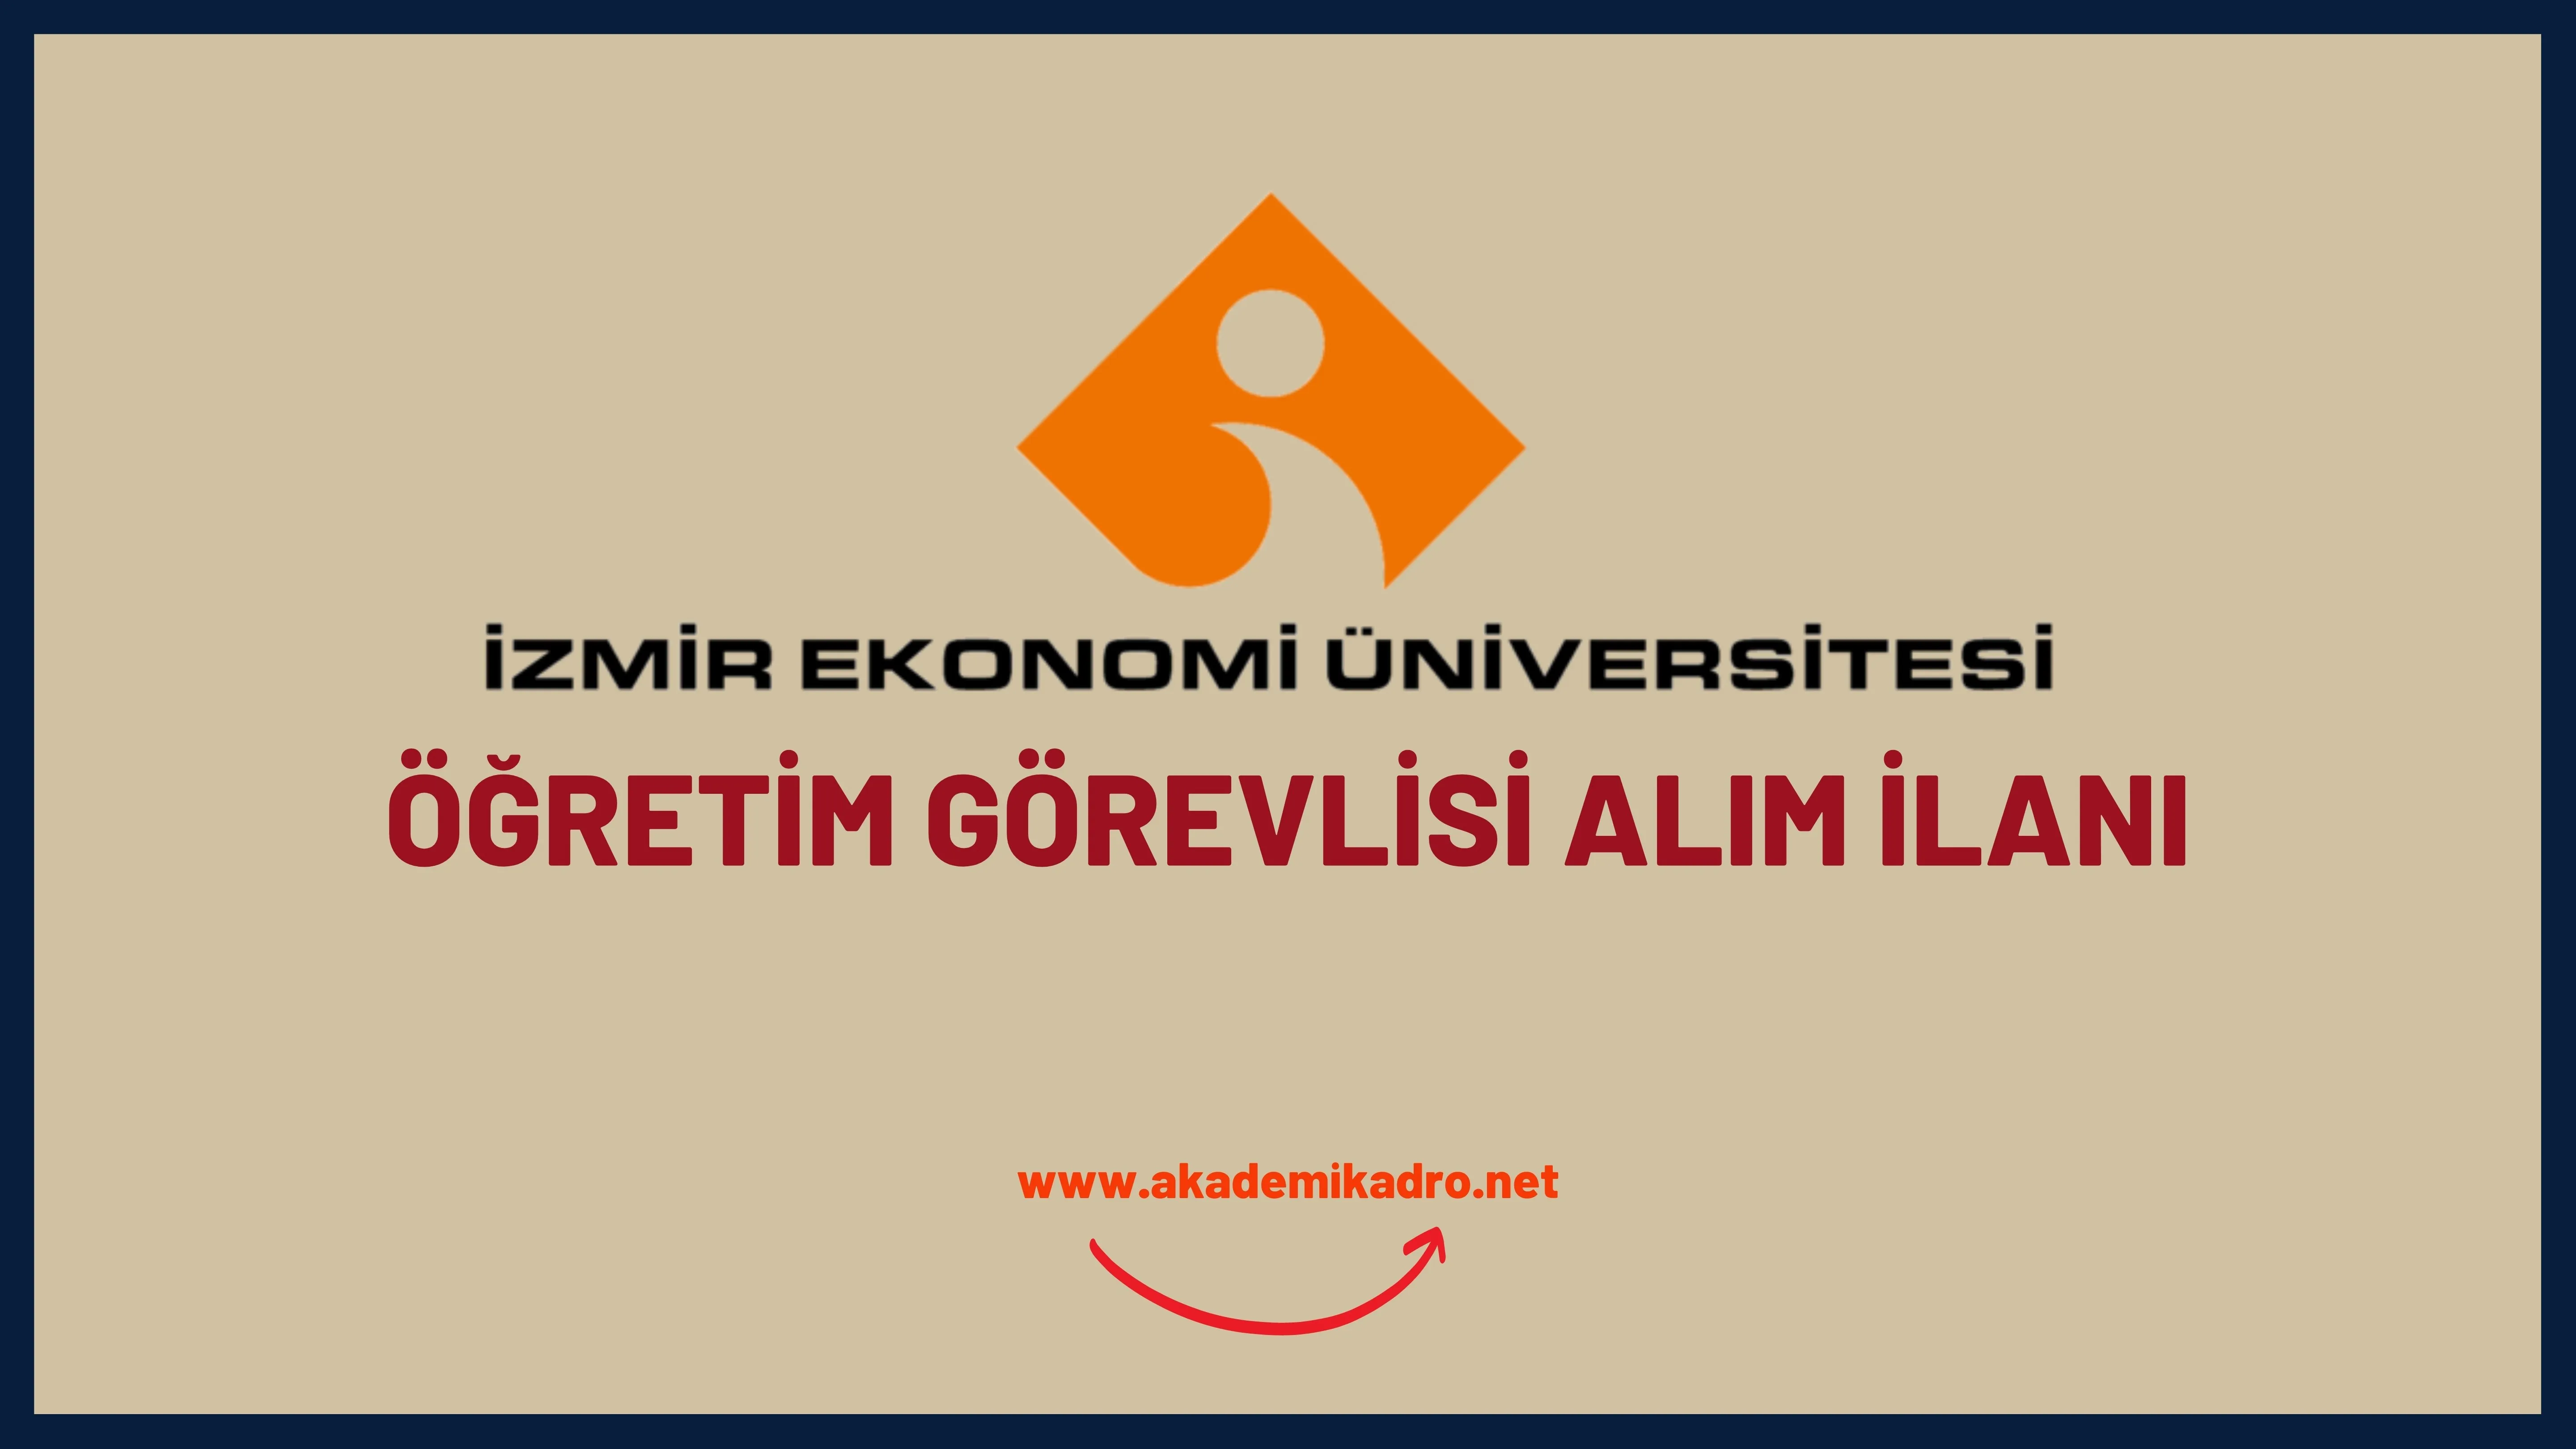 İzmir Ekonomi Üniversitesi 4 Öğretim görevlisi alacak.